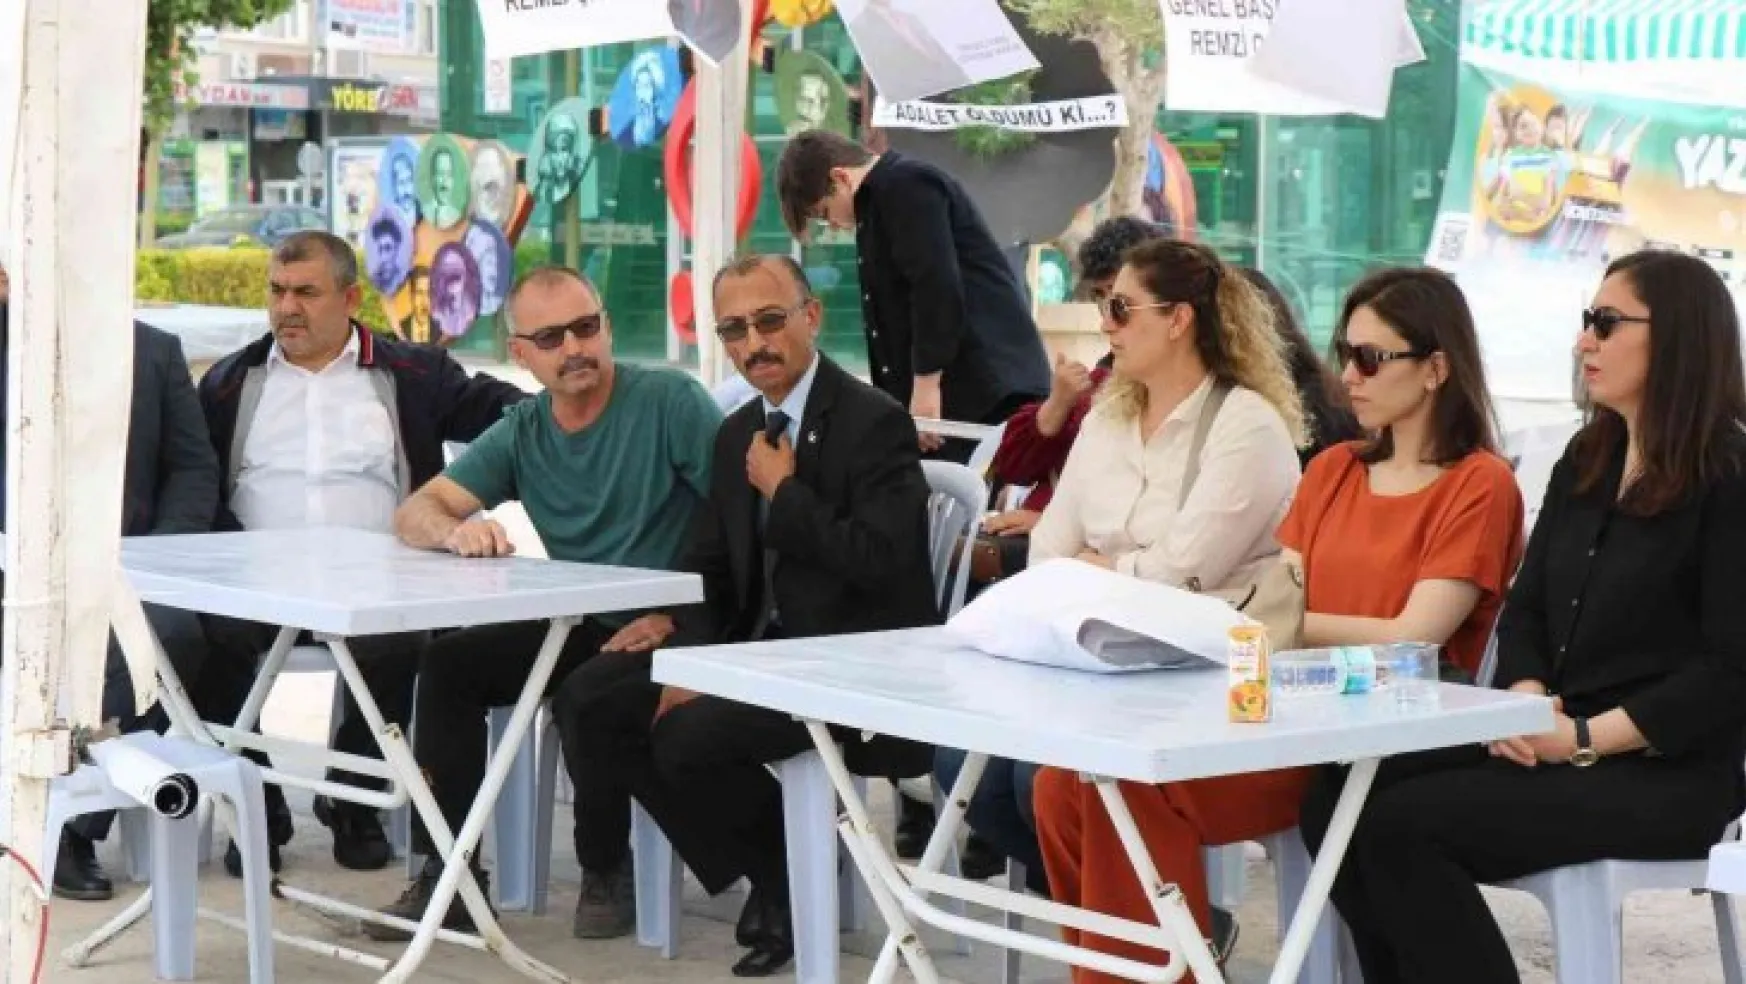 Milli Yol Partisi GİK Üyesi Göçmen Kırşehir'de konuştu